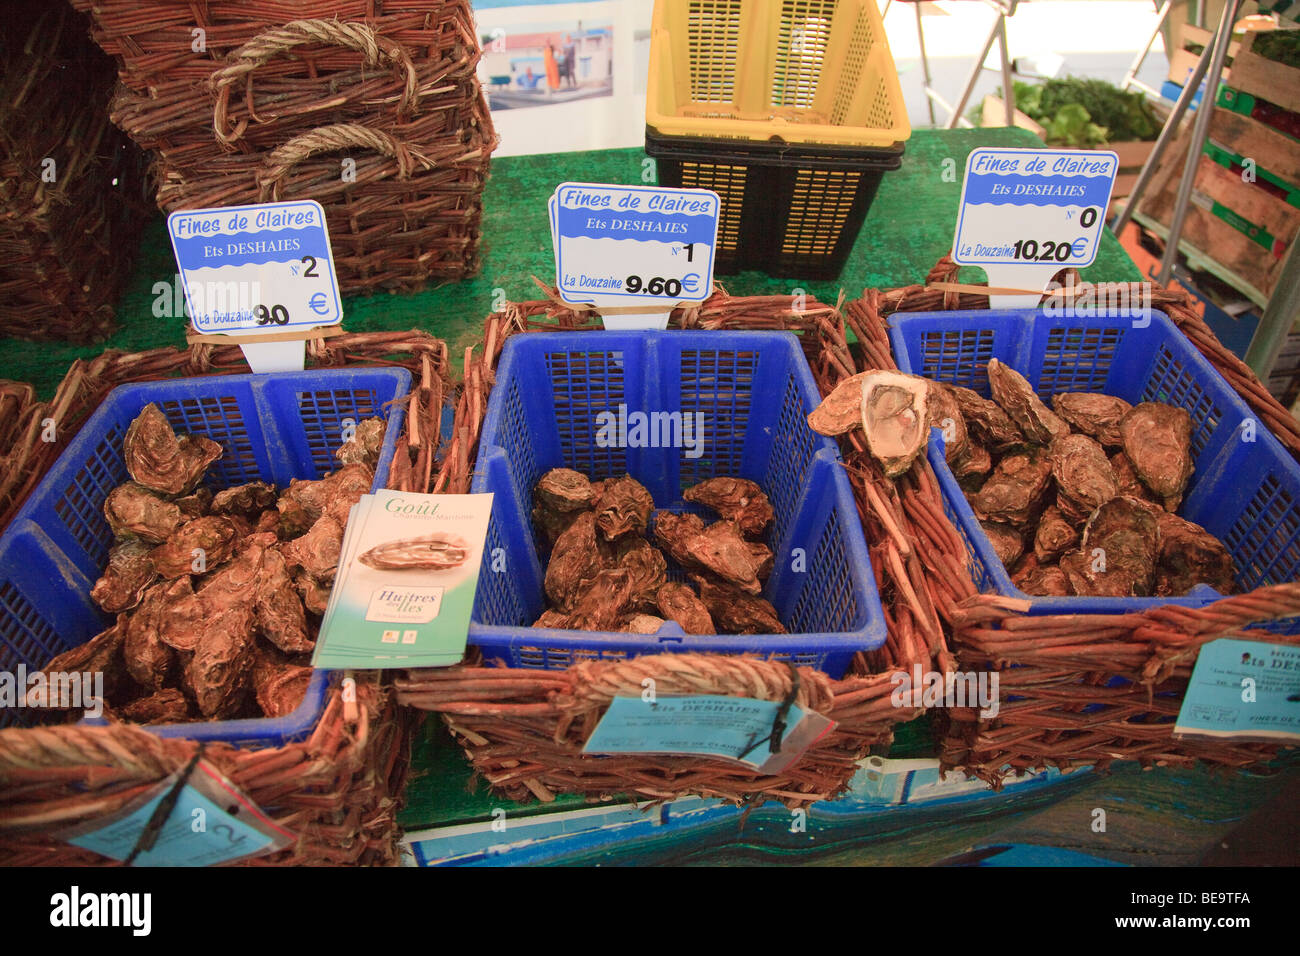 Teure Austern, die auf Verkauf in Paris als "Geldbußen de Claires" eingestuft Stockfoto